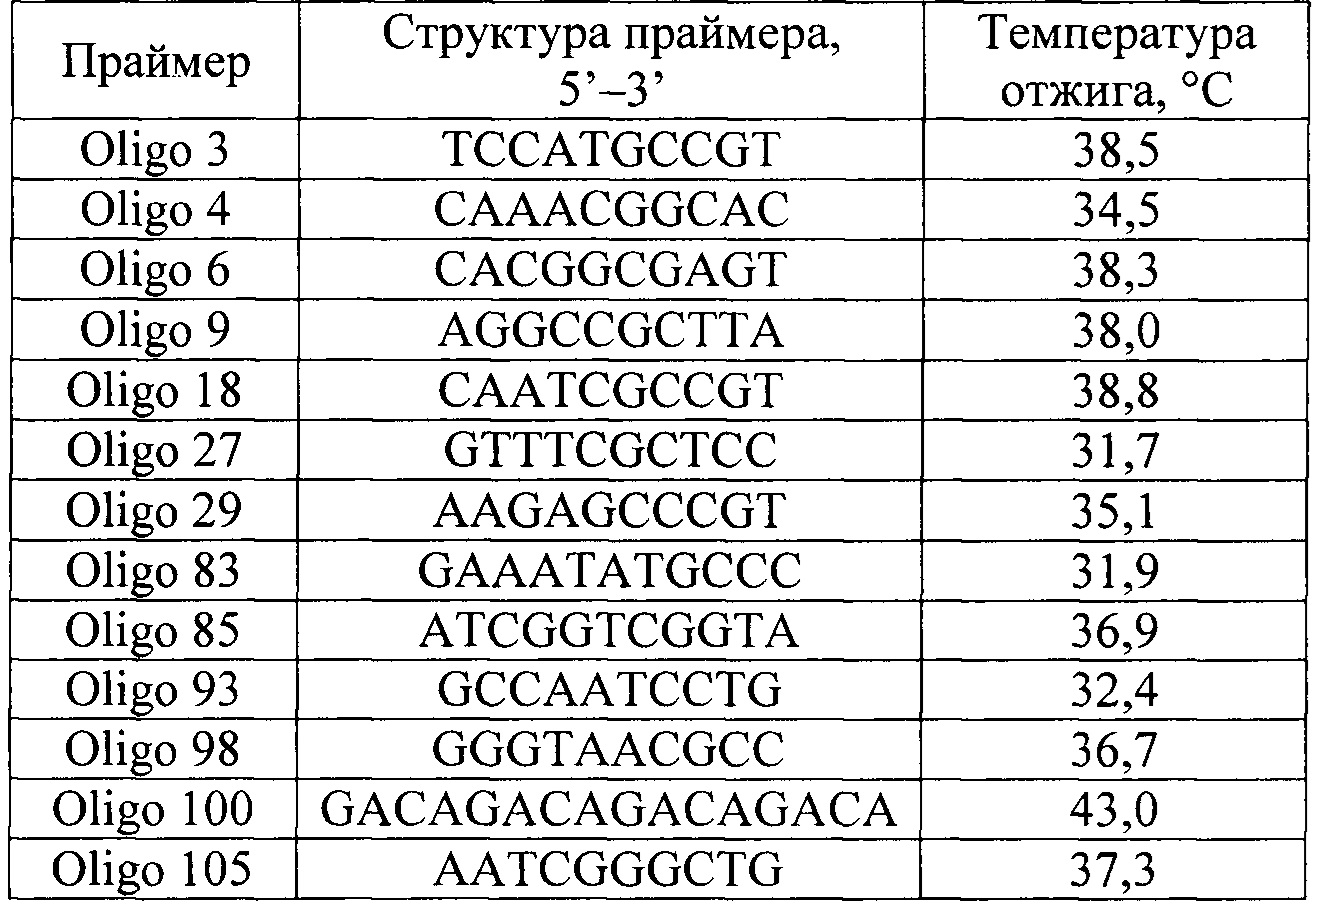 Способ генетической паспортизации селекционных достижений малины на основе RAPD-маркеров